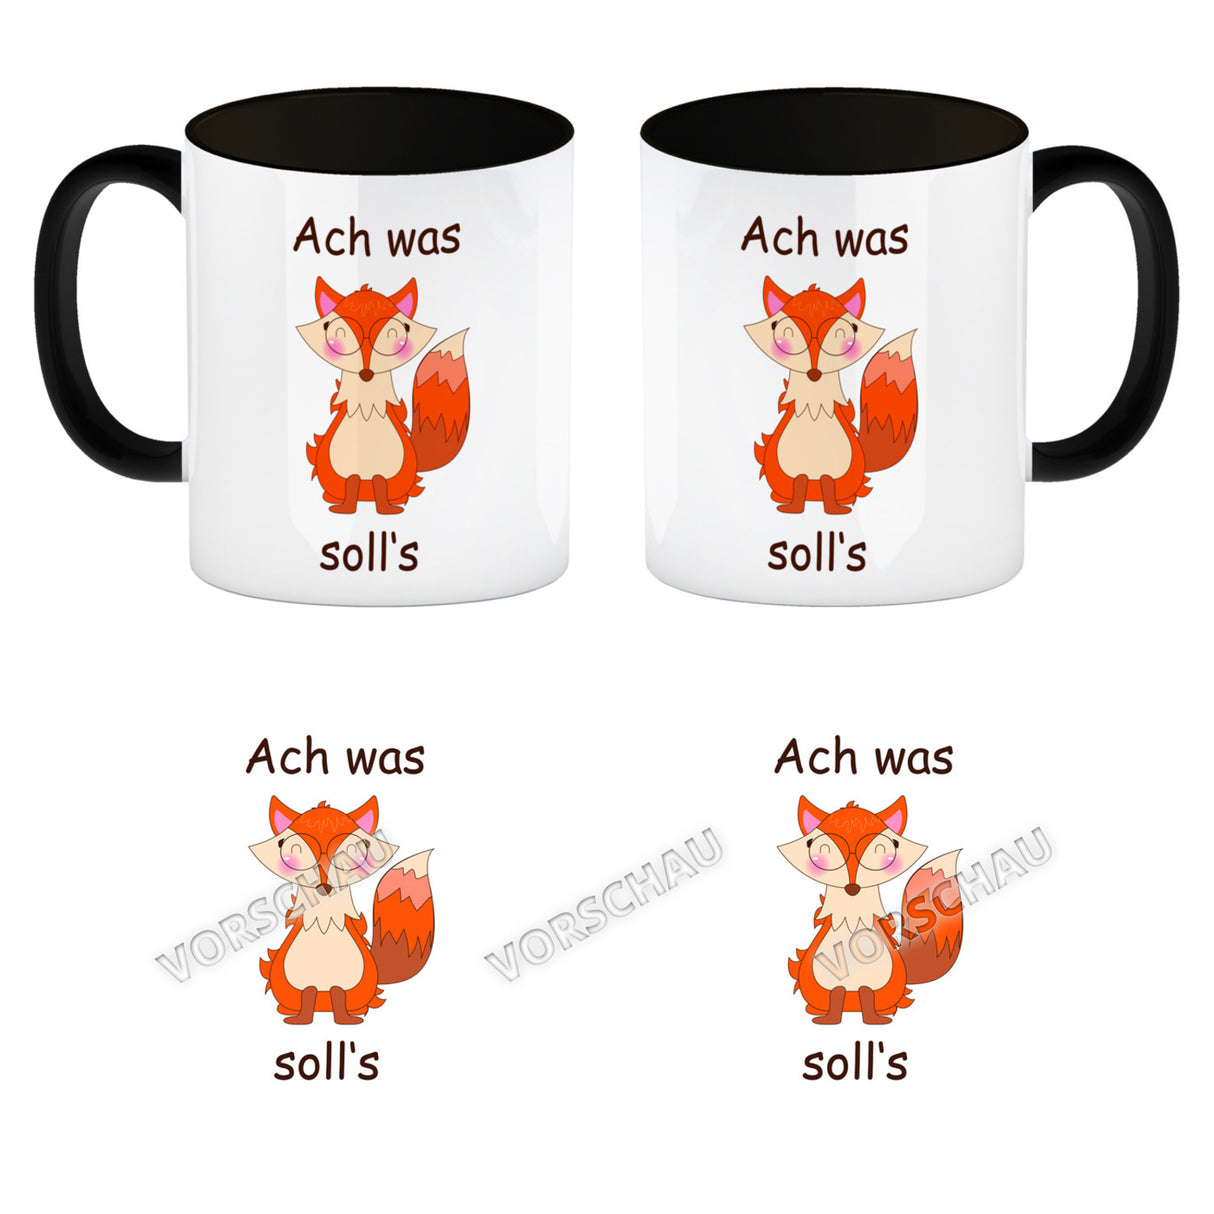 Fuchs Kaffeebecher mit Spruch Oh for Fox sake